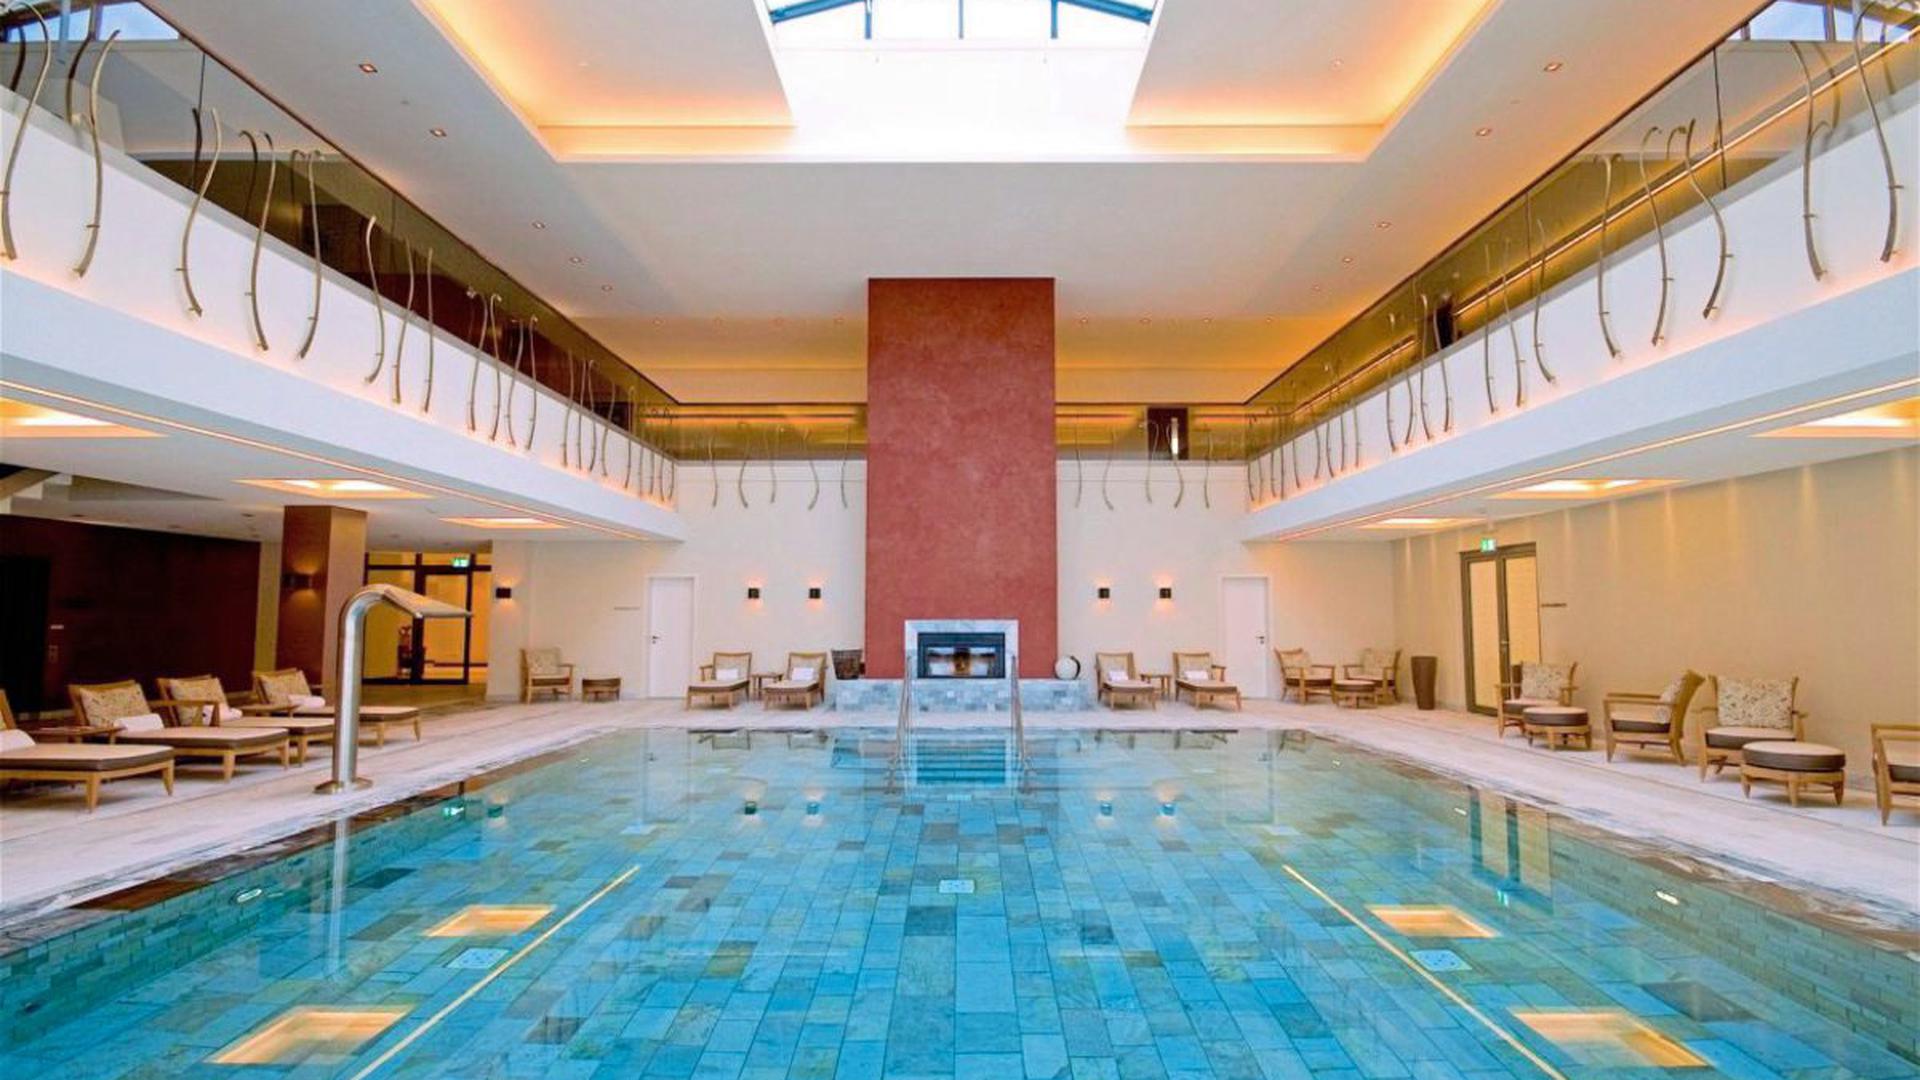 Abtauchen und entspannen kann der Gewinner oder die Gewinnerin in der 4 000 Quadratmeter großen Wellnesswelt des Schlosshotels Friedrichsruhe.